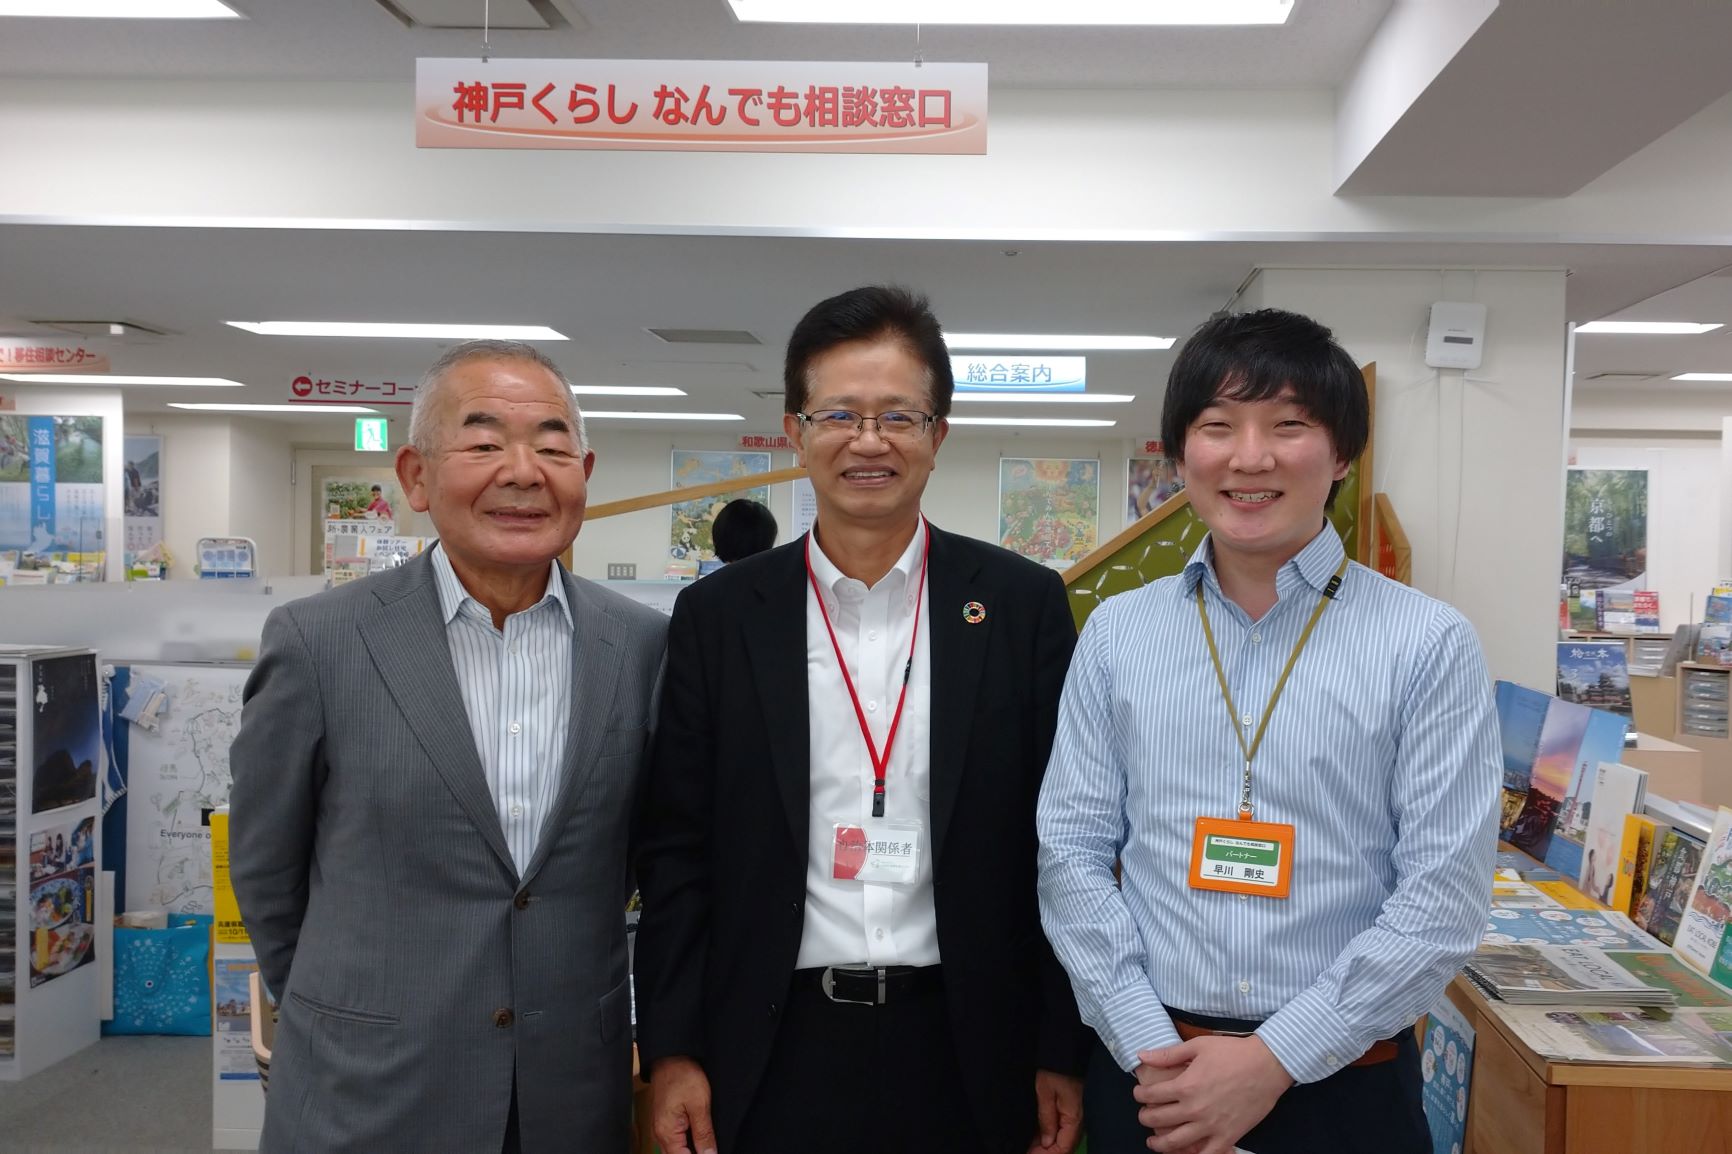 神戸市・今西副市長が来訪されました | 地域のトピックス